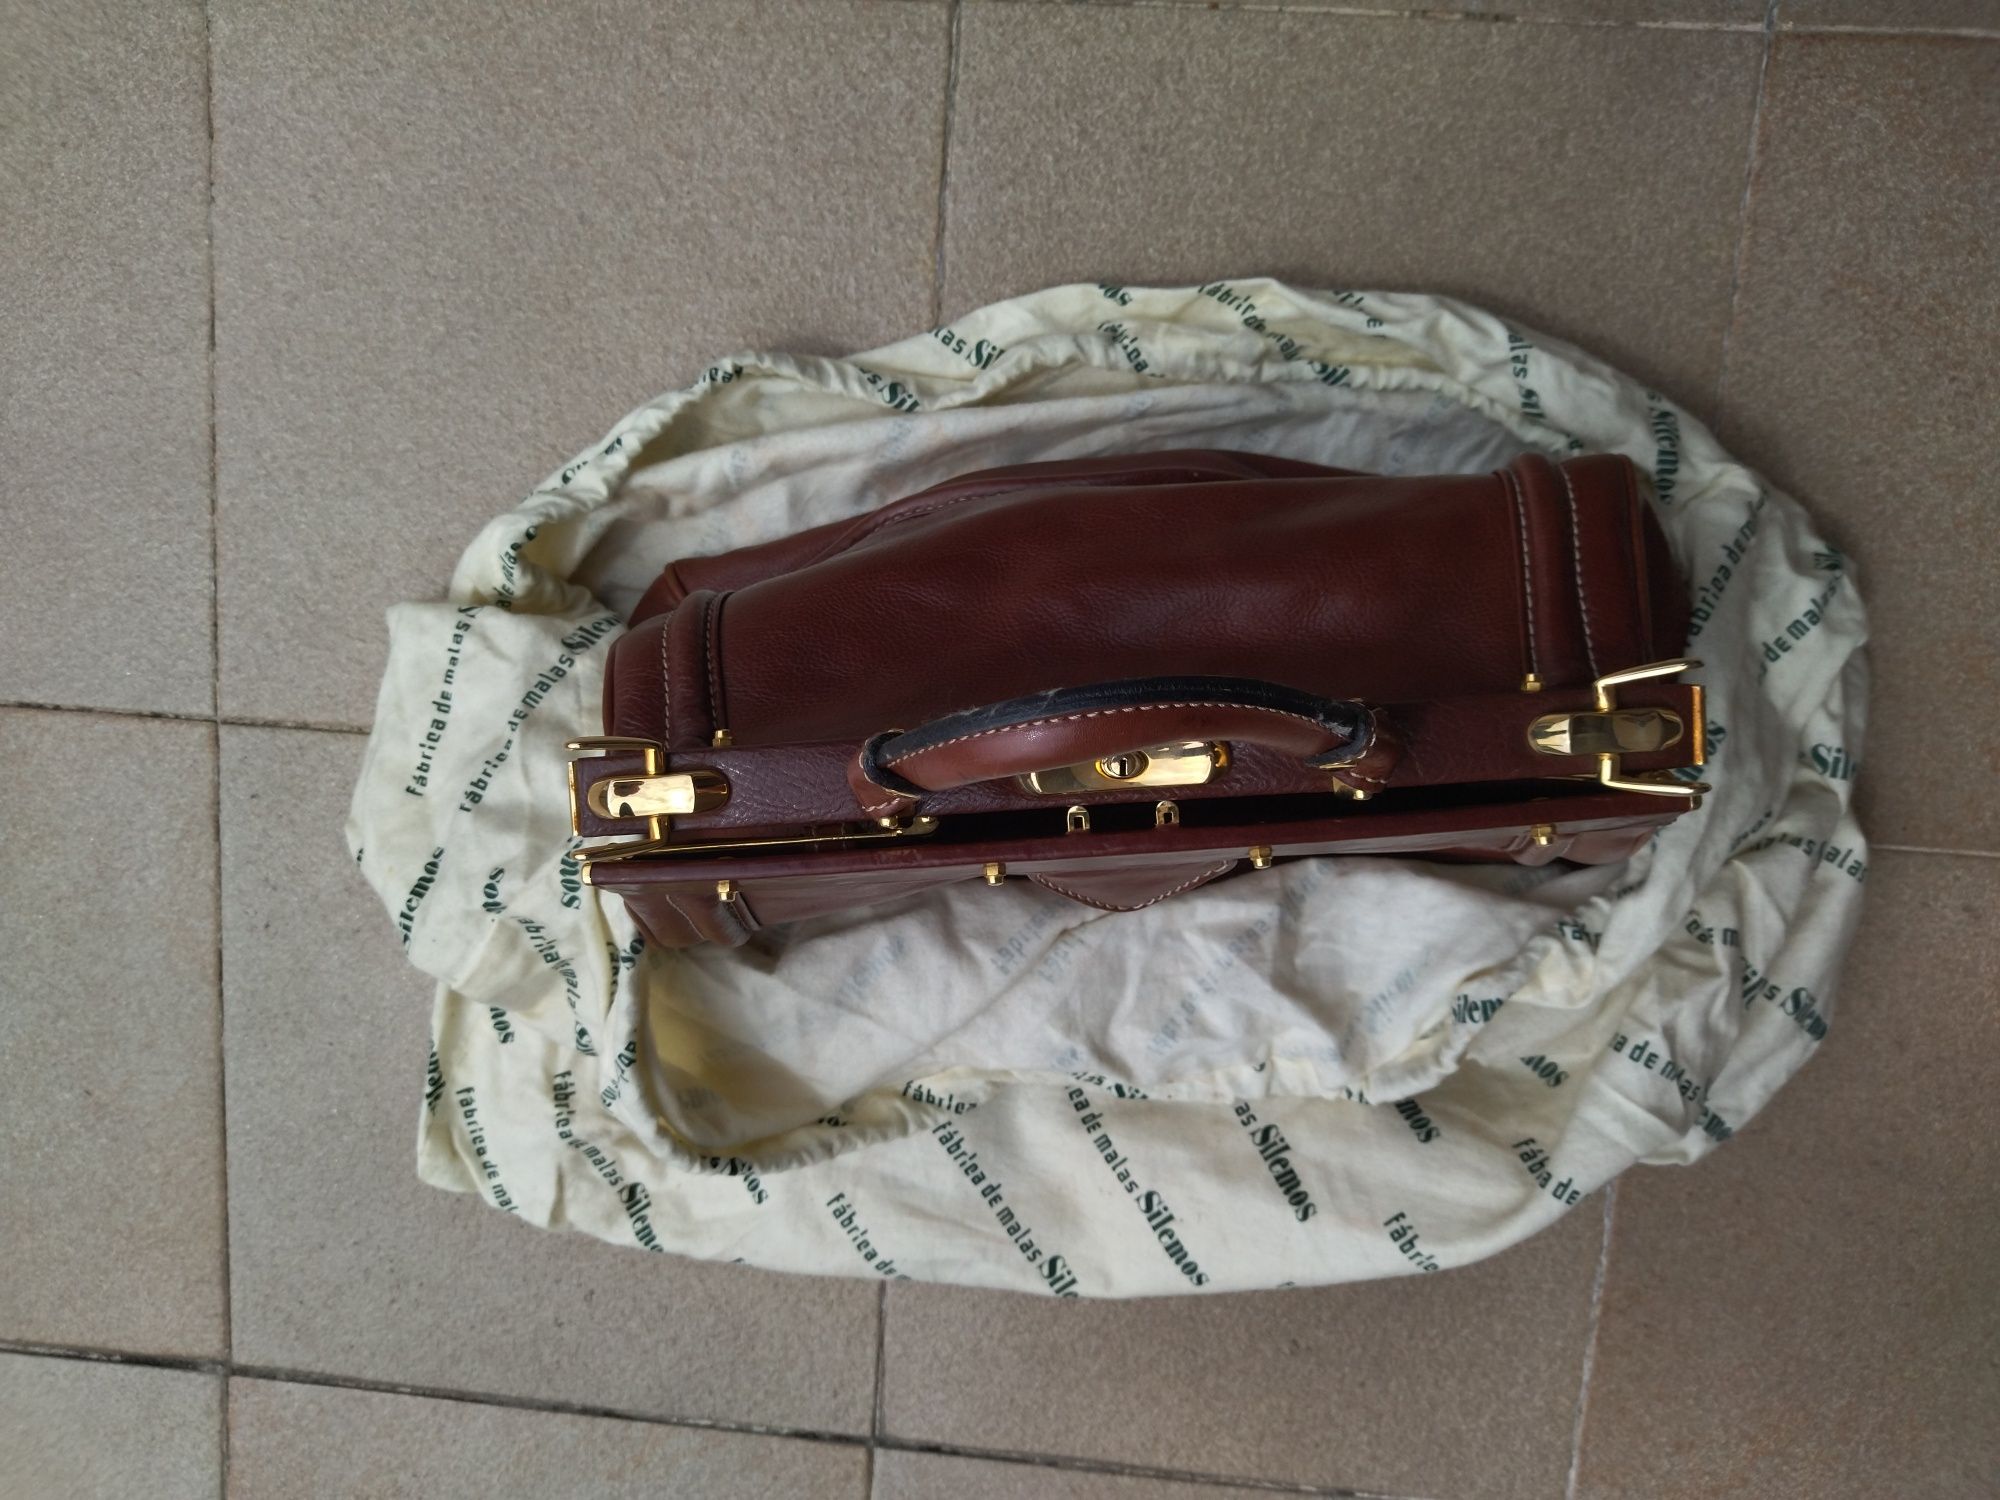 Mala doctor's bag